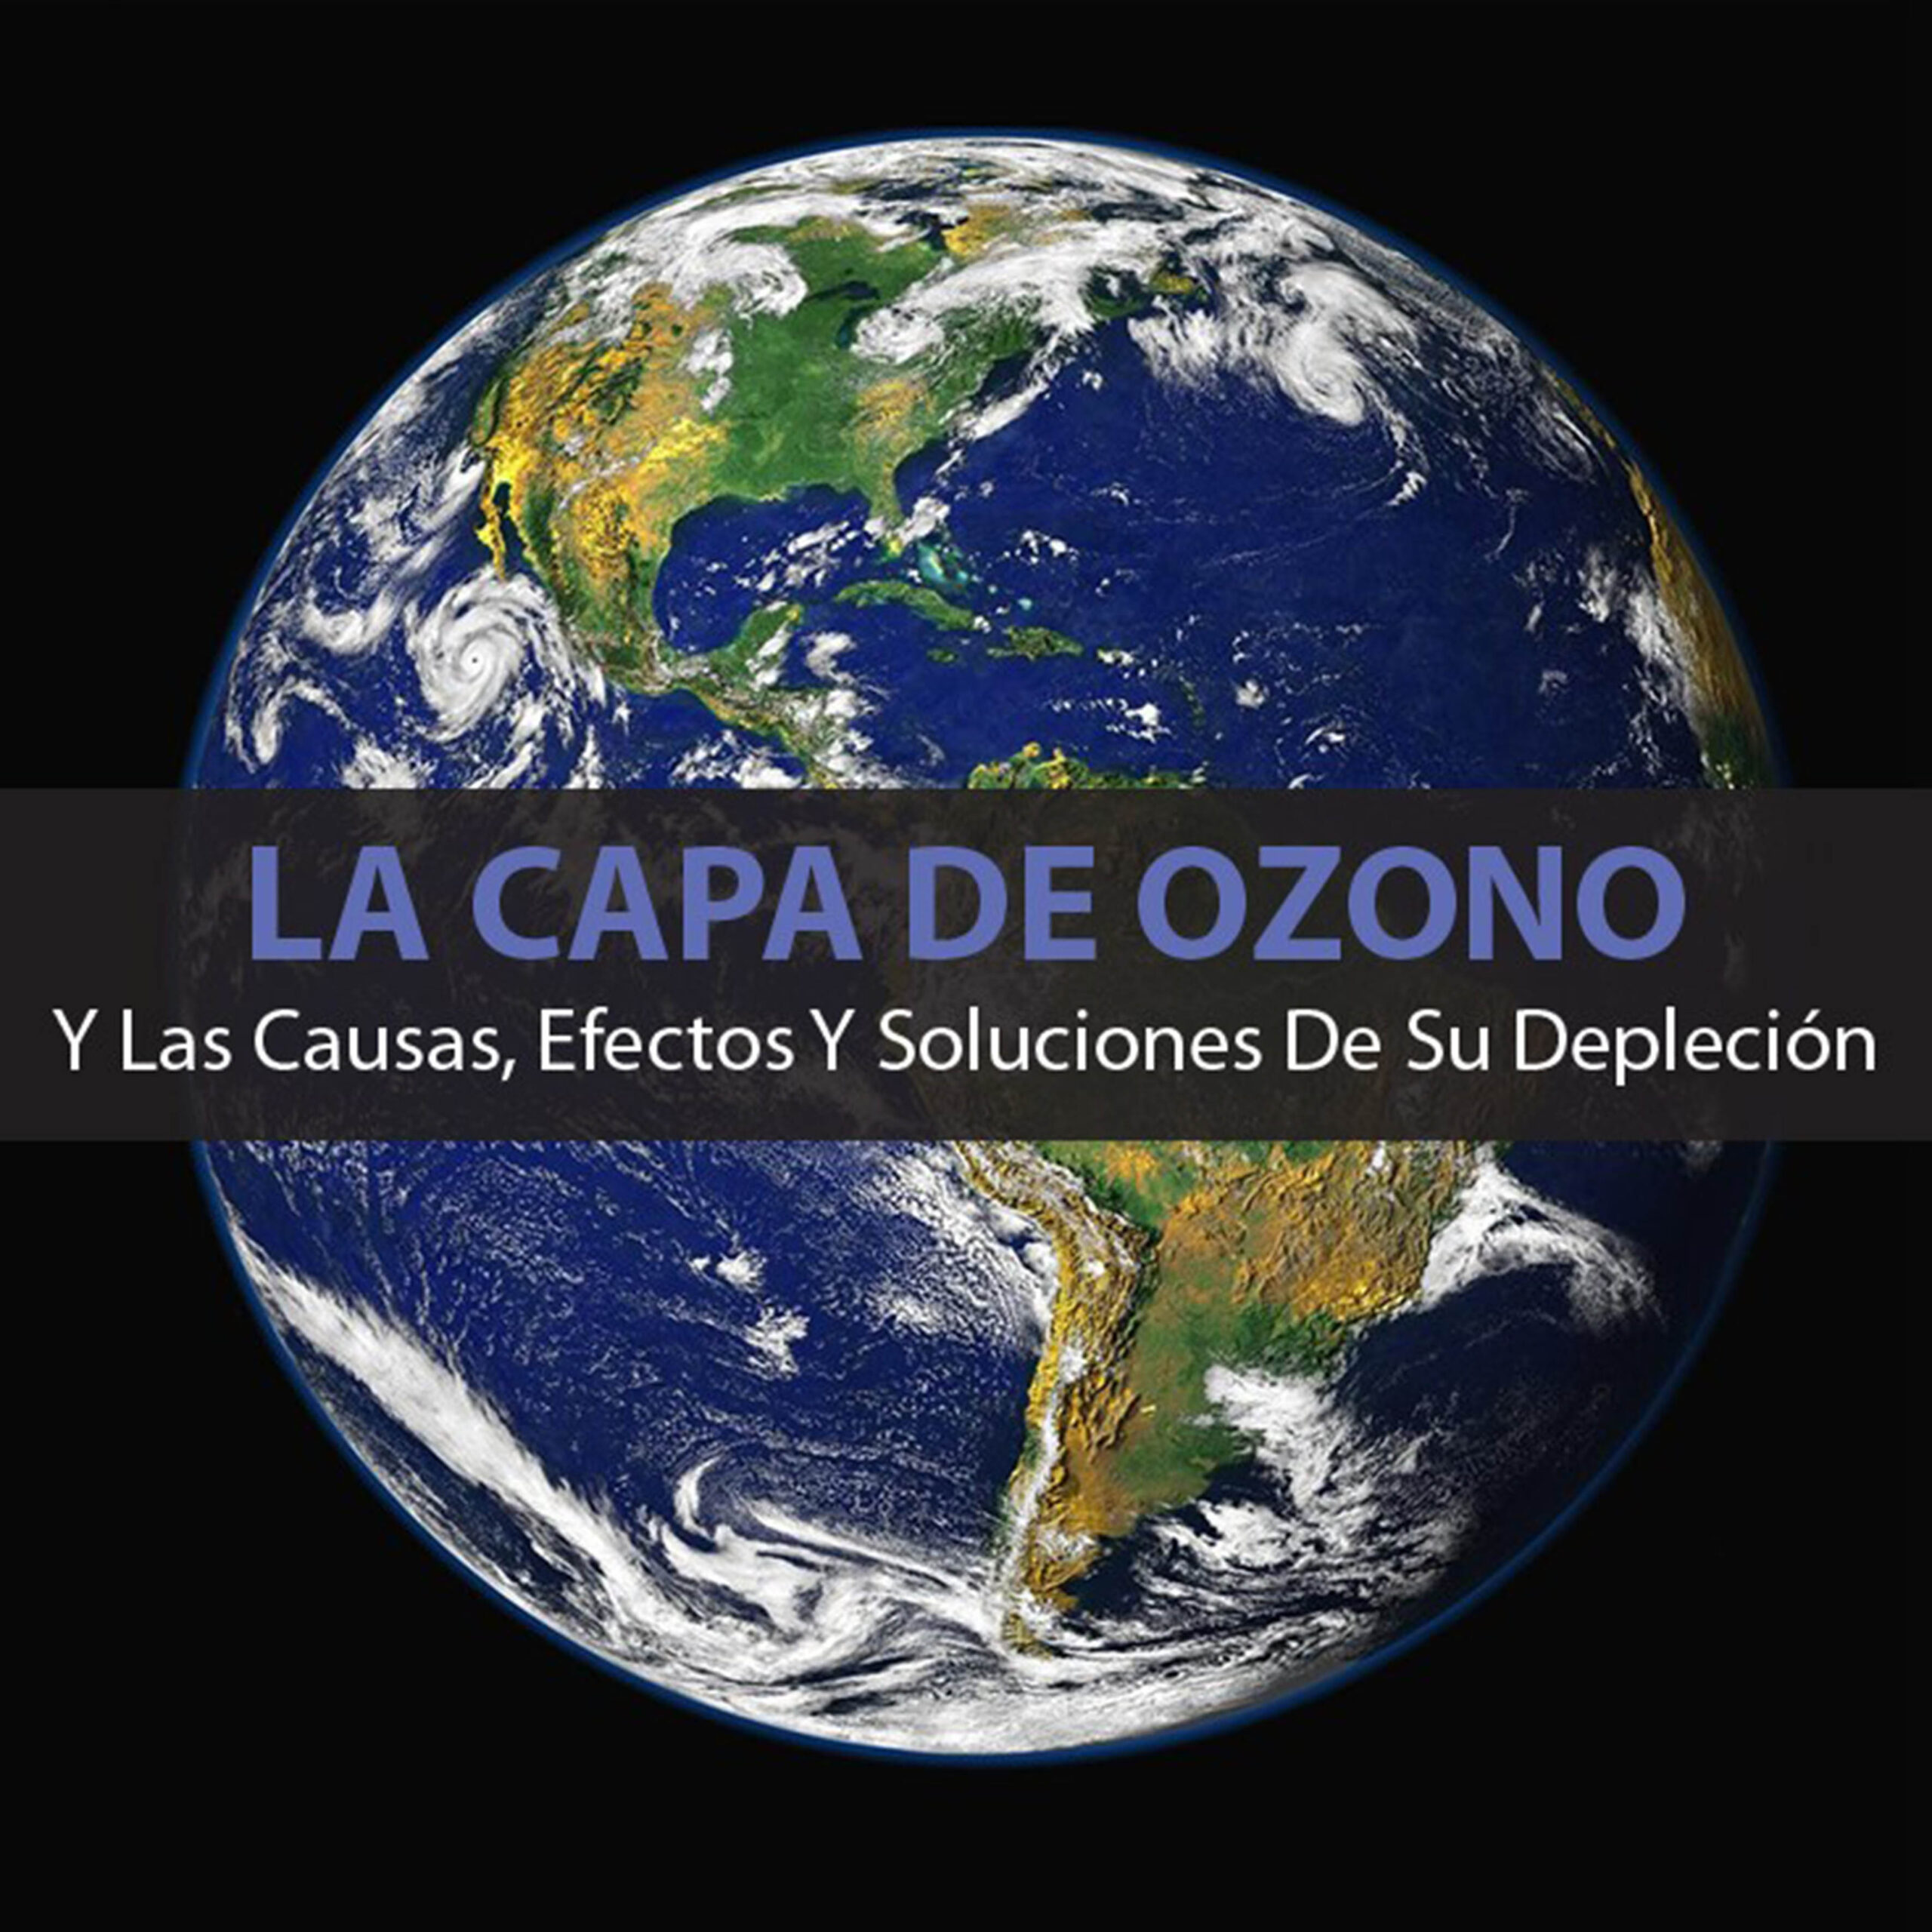 POR LOS ACUERDOS INTERNACIONALES SE RECUPERA LA CAPA DE OZONO